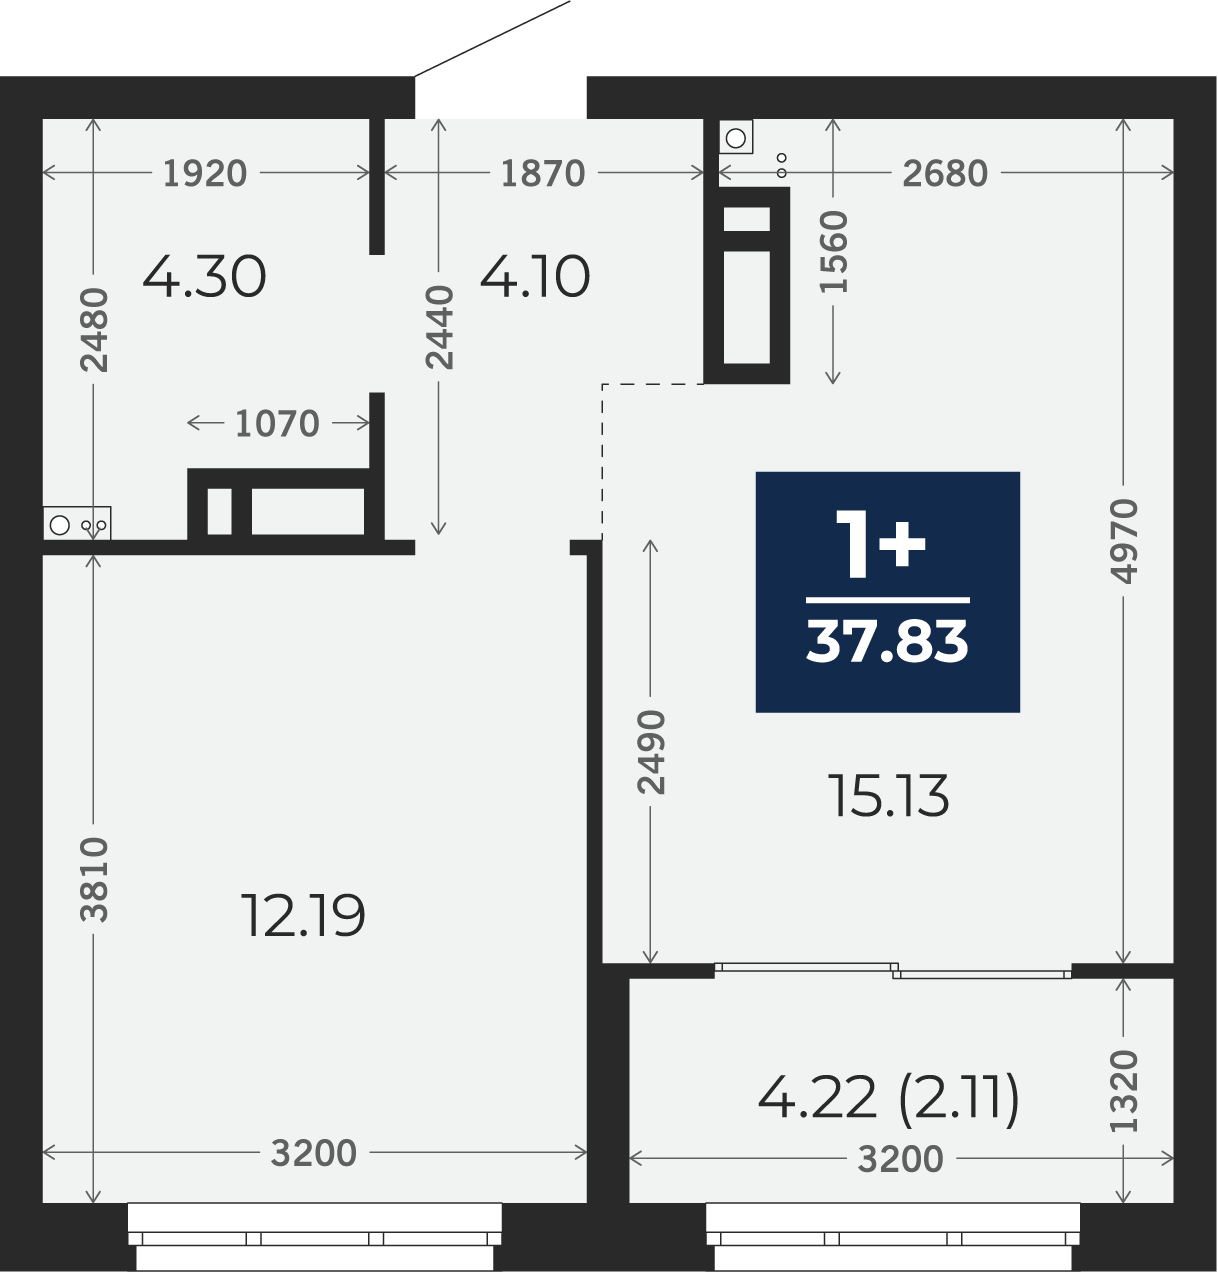 Квартира № 248, 1-комнатная, 37.83 кв. м, 7 этаж